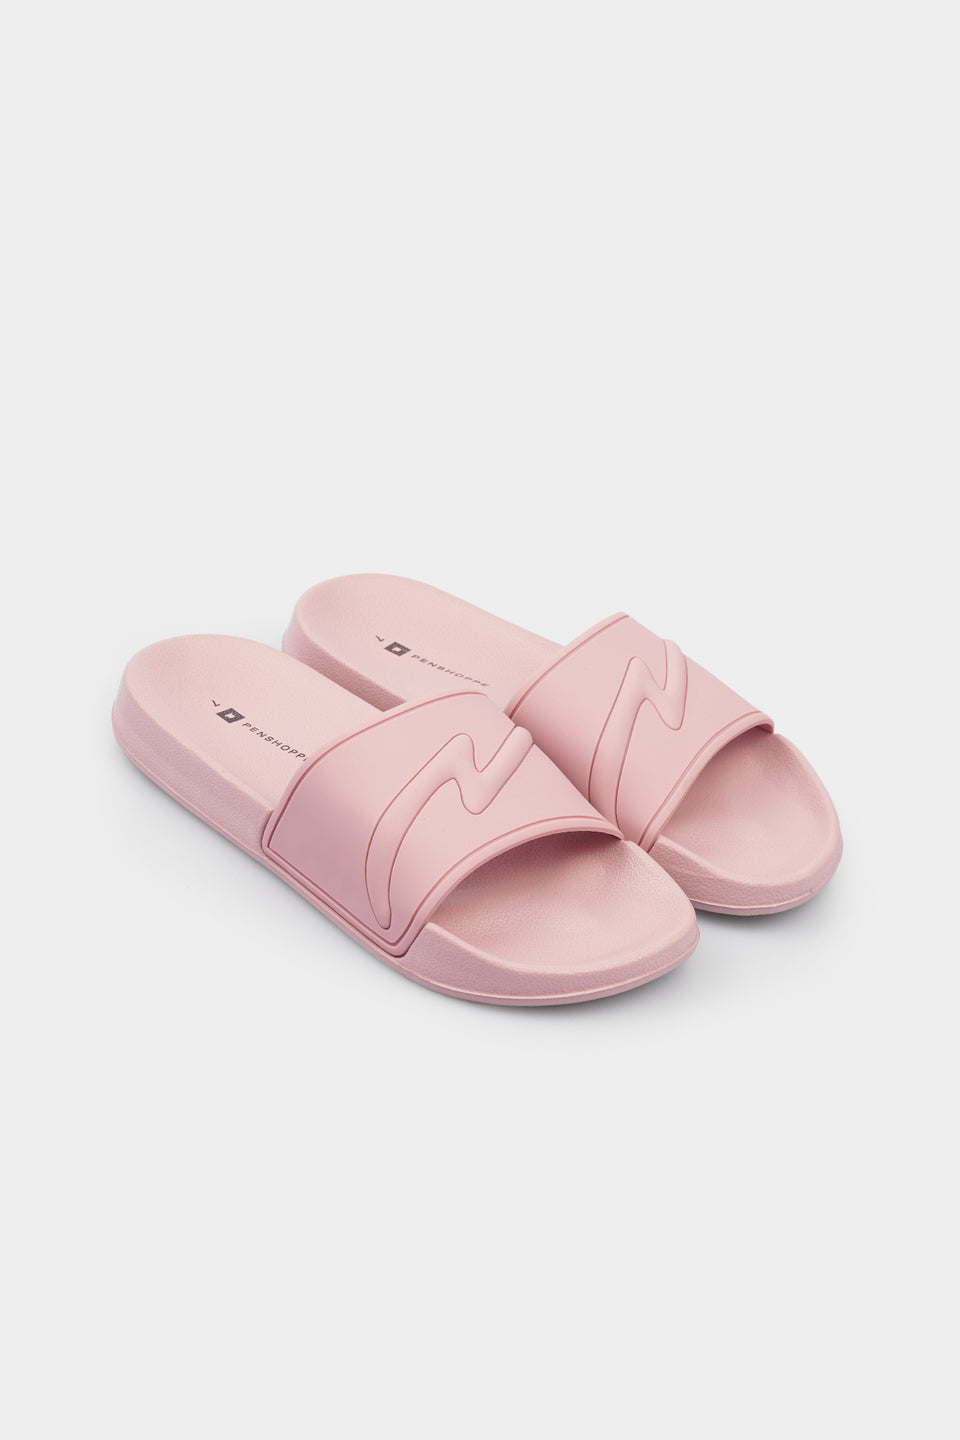 penshoppe slippers for female